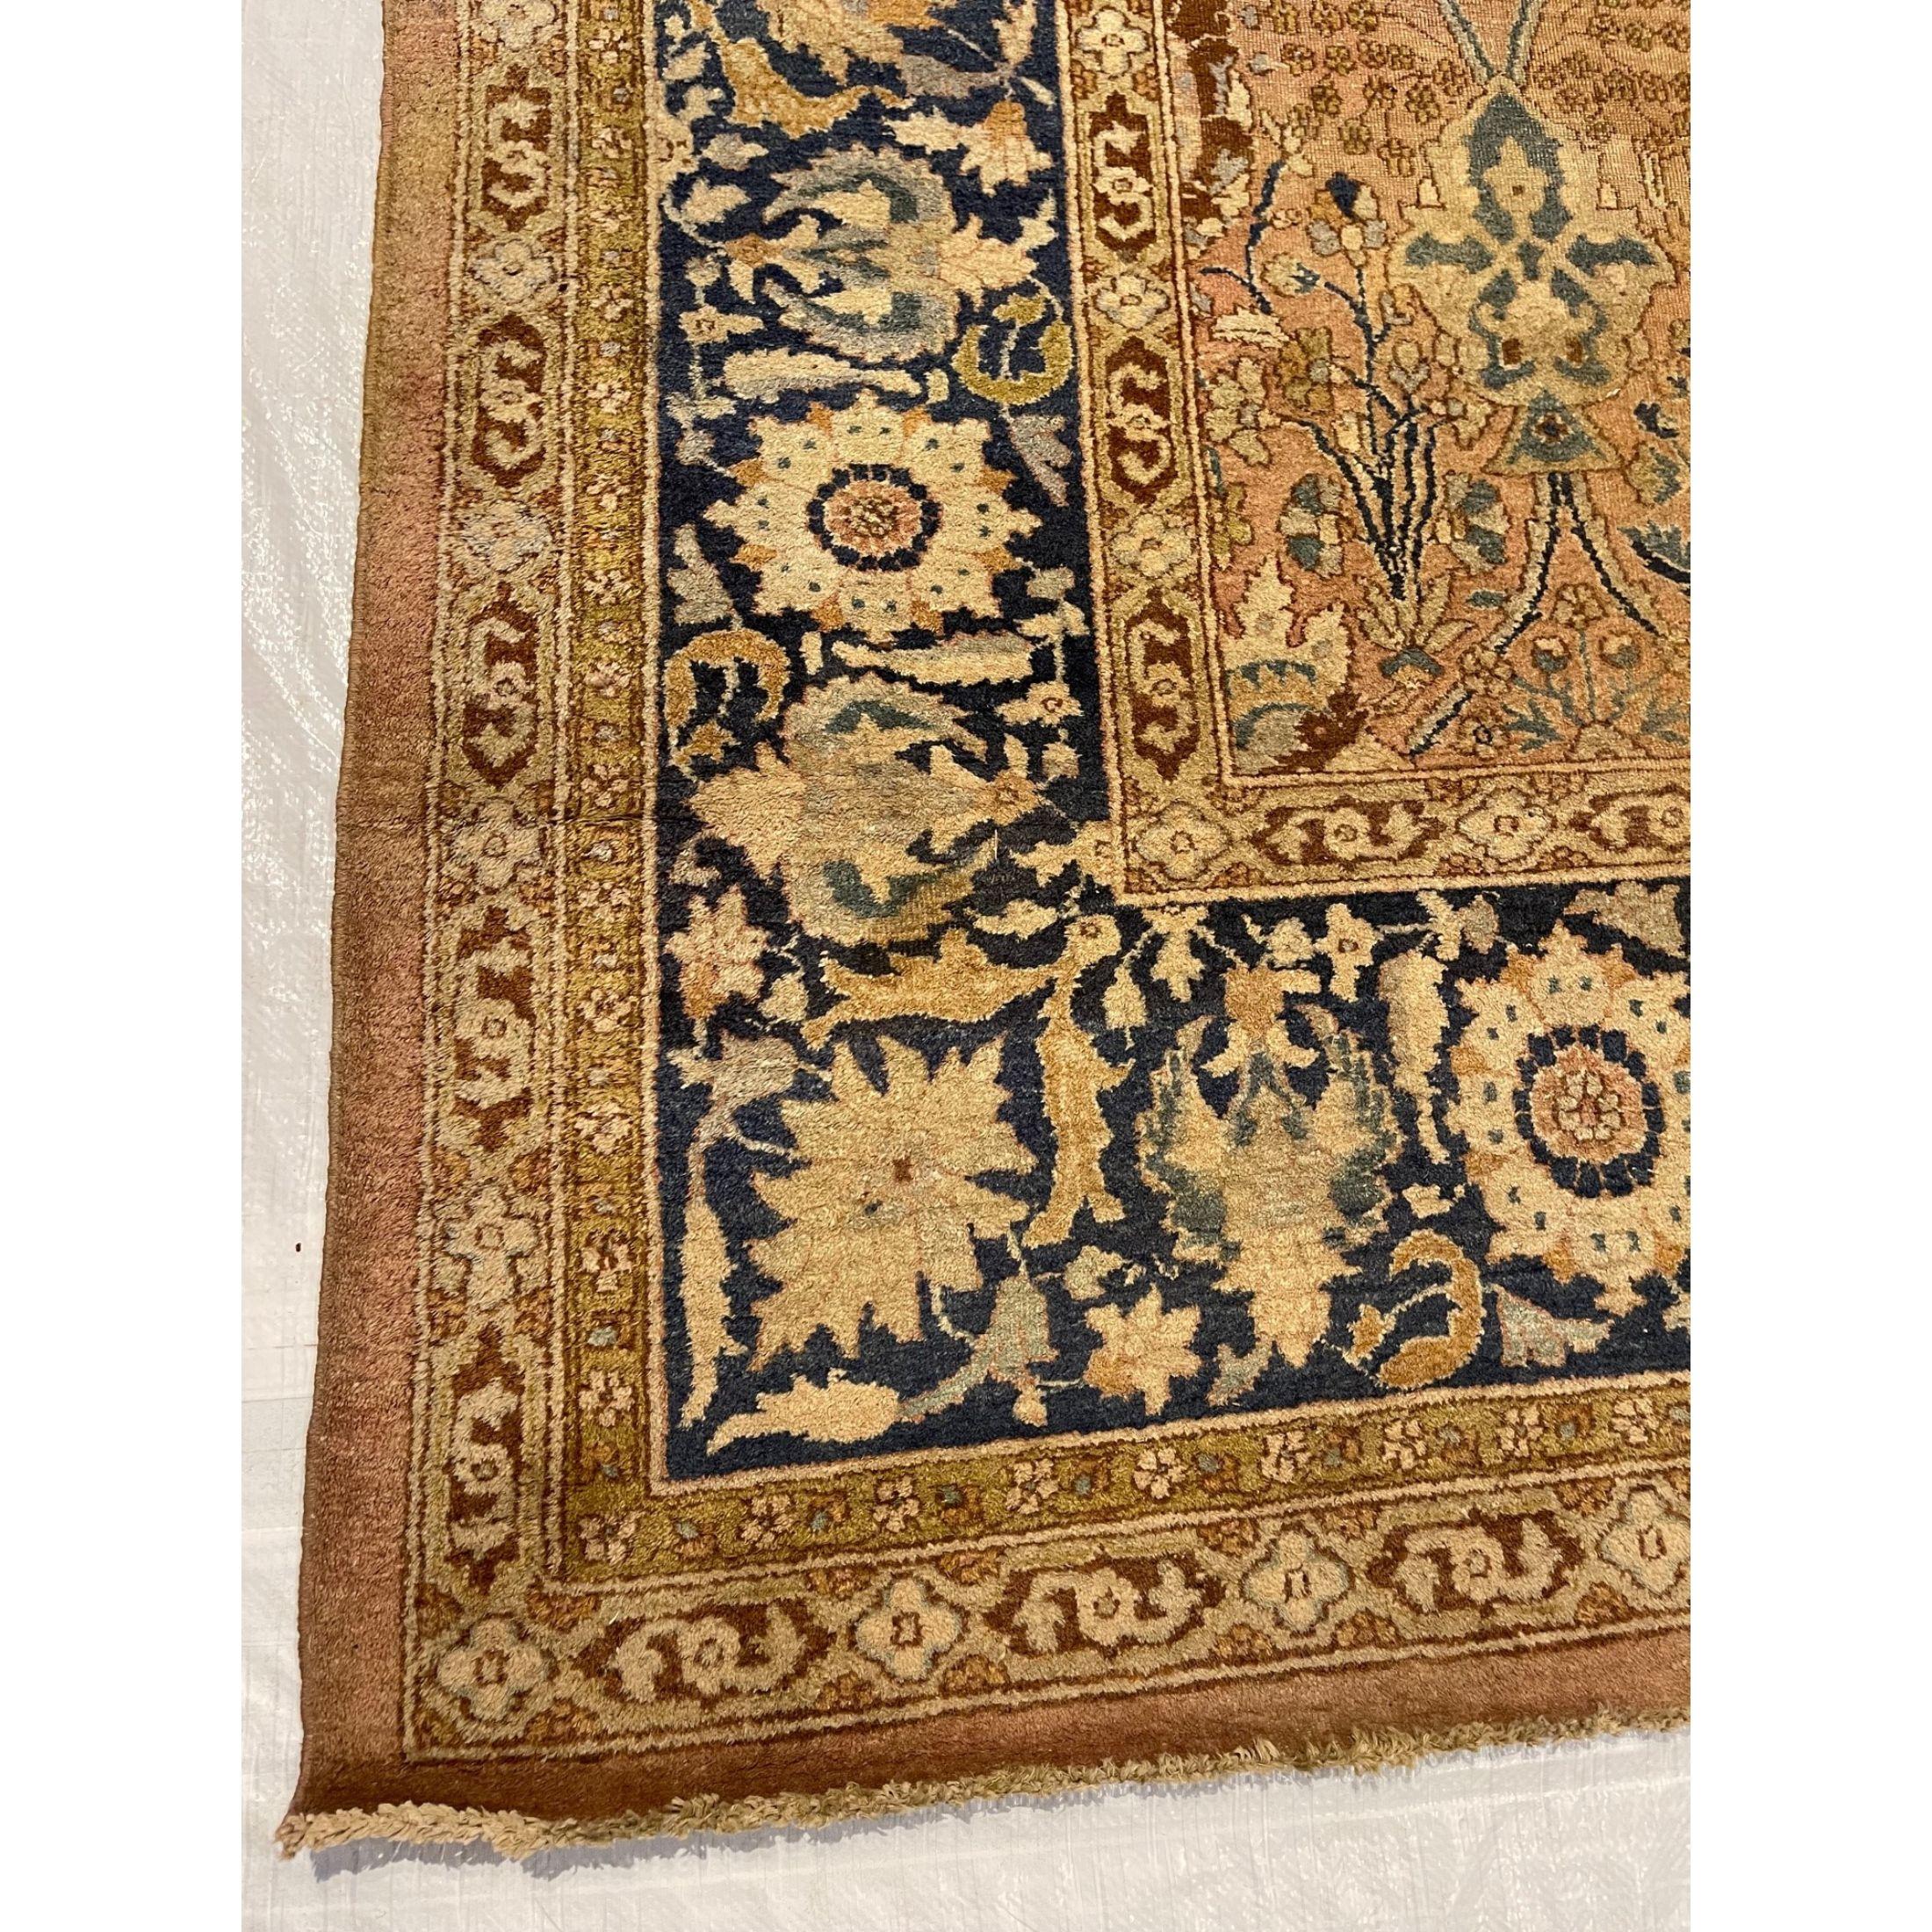 In der Zeit der Kolonialherrschaft über Indien begannen die Teppiche von Amritsar, westliche Einflüsse in ihrem Design widerzuspiegeln. Die Kunsthandwerker Nordindiens nutzten ihre Chance, von der ständig steigenden Nachfrage nach exotischen